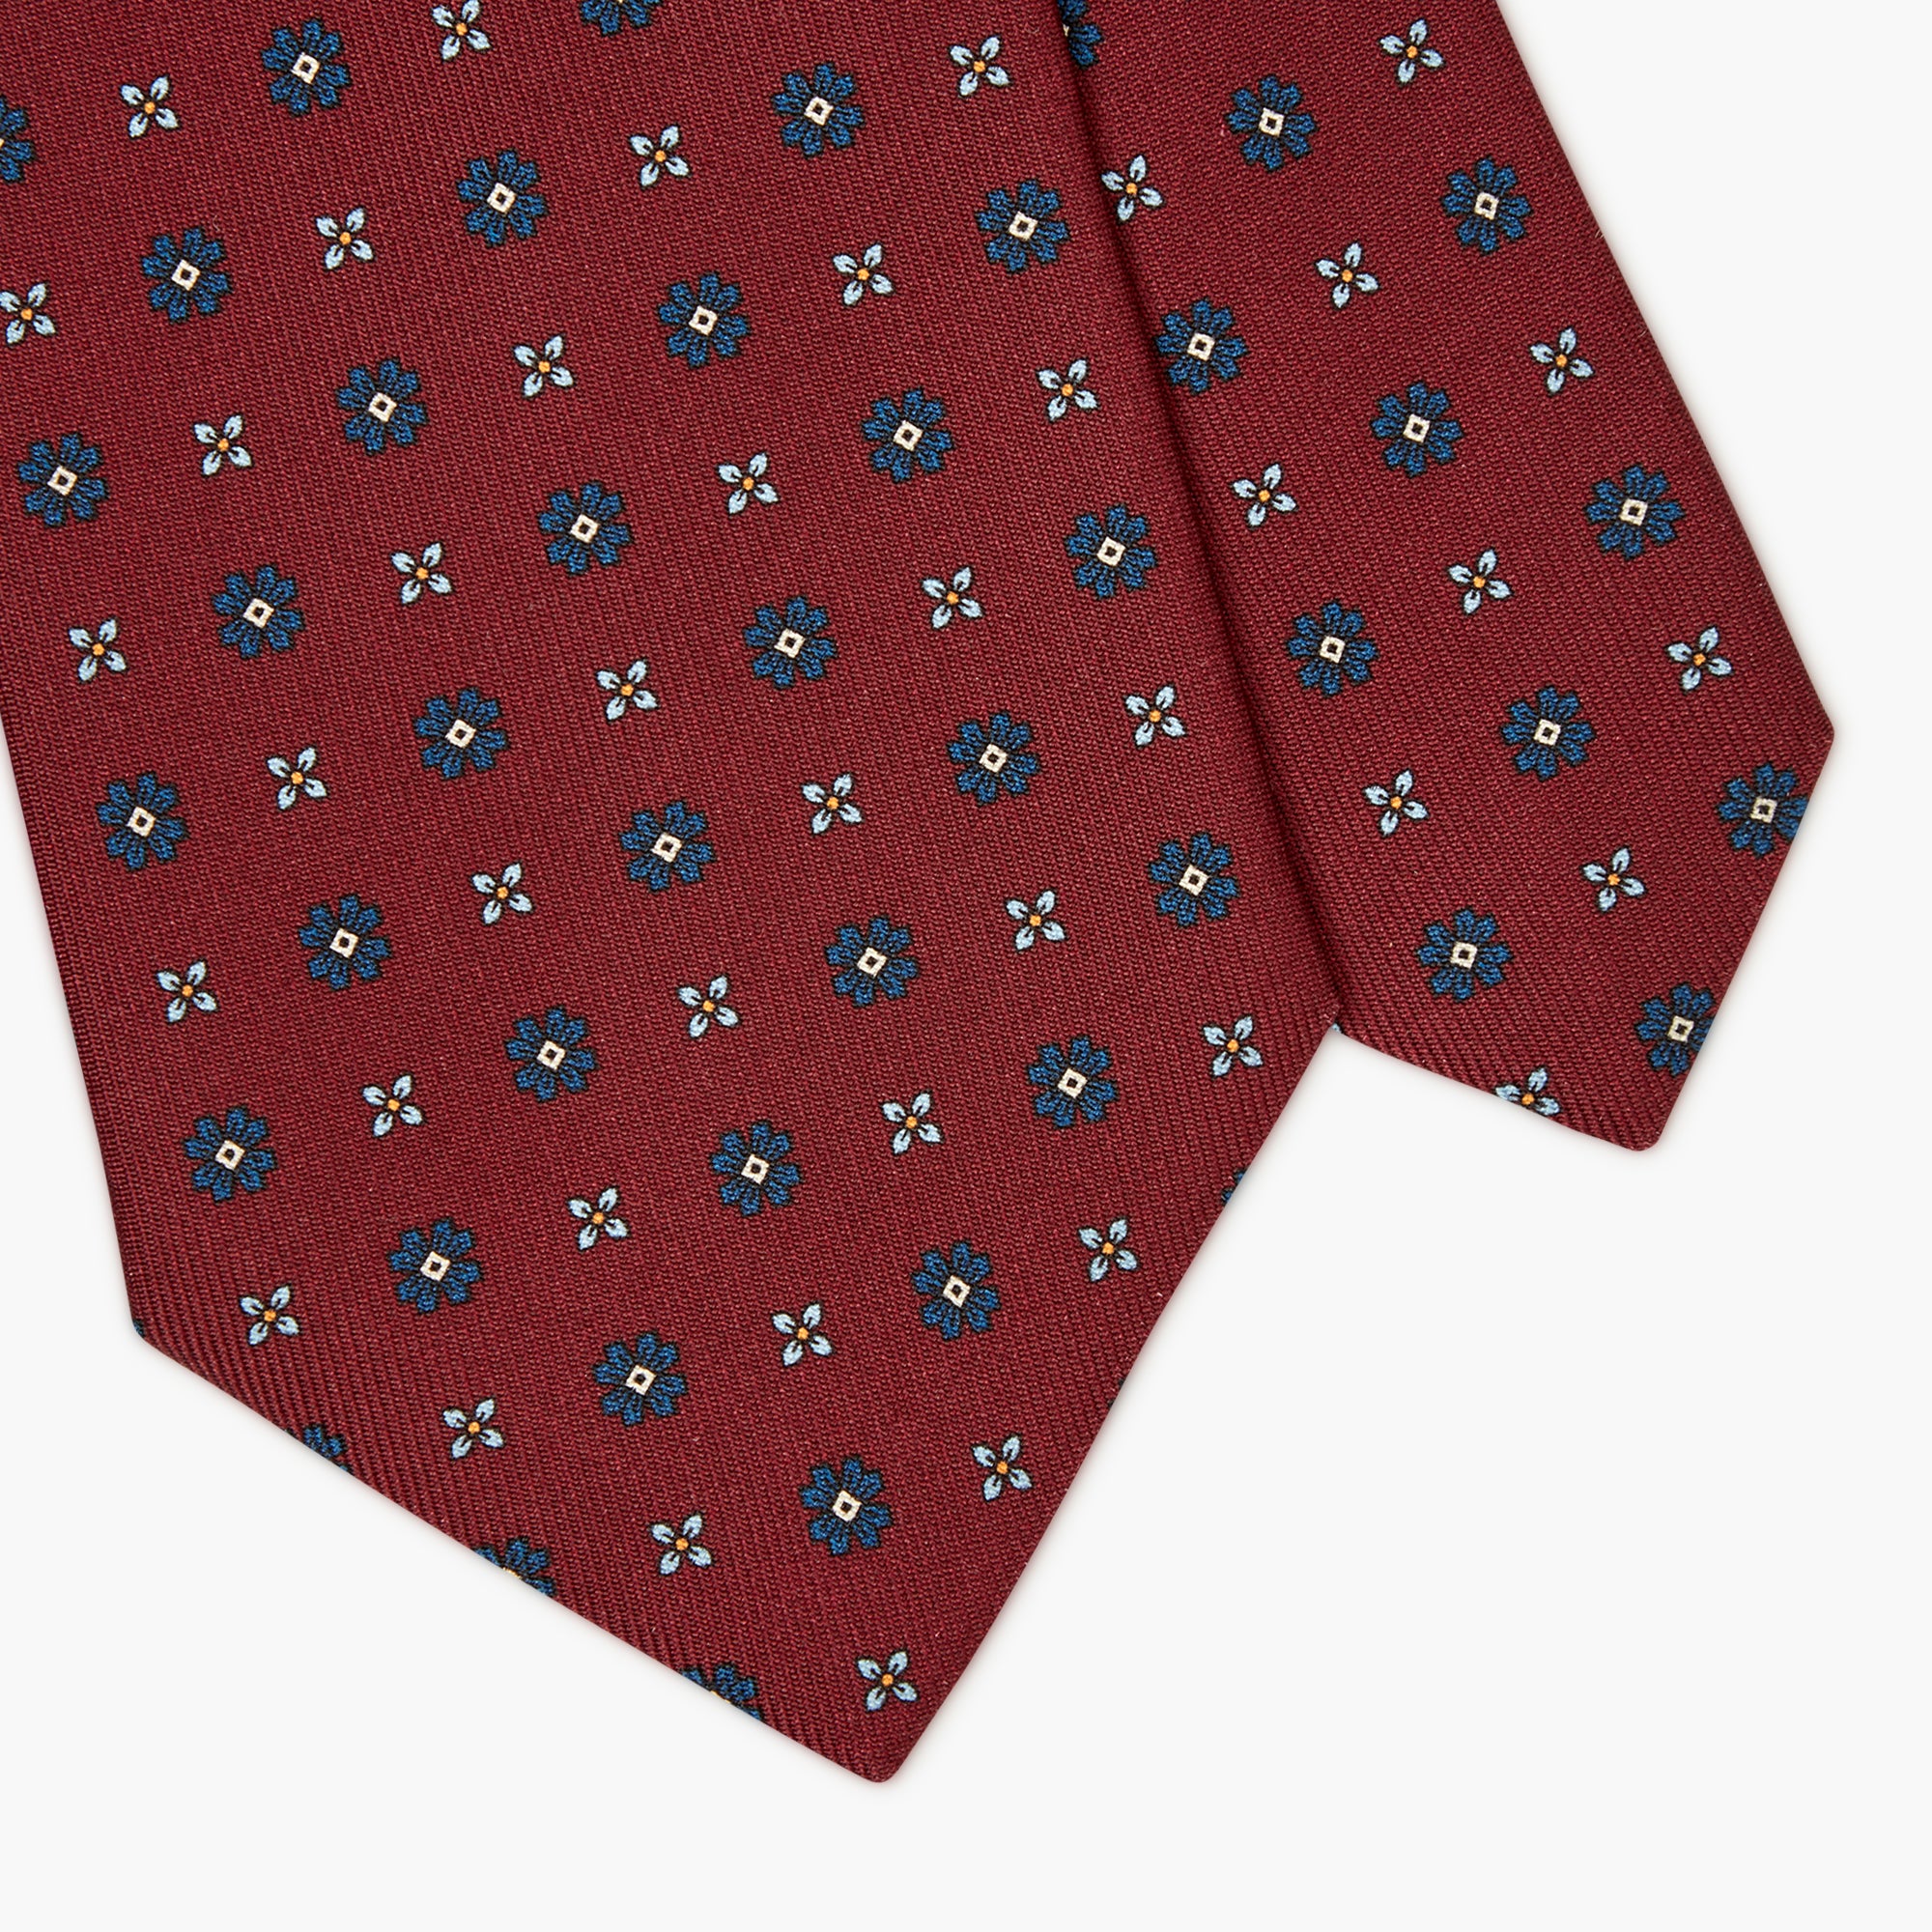 Cravatta 3 Pieghe In Seta Inglese Stampata Floreale - Rosso Borgogna